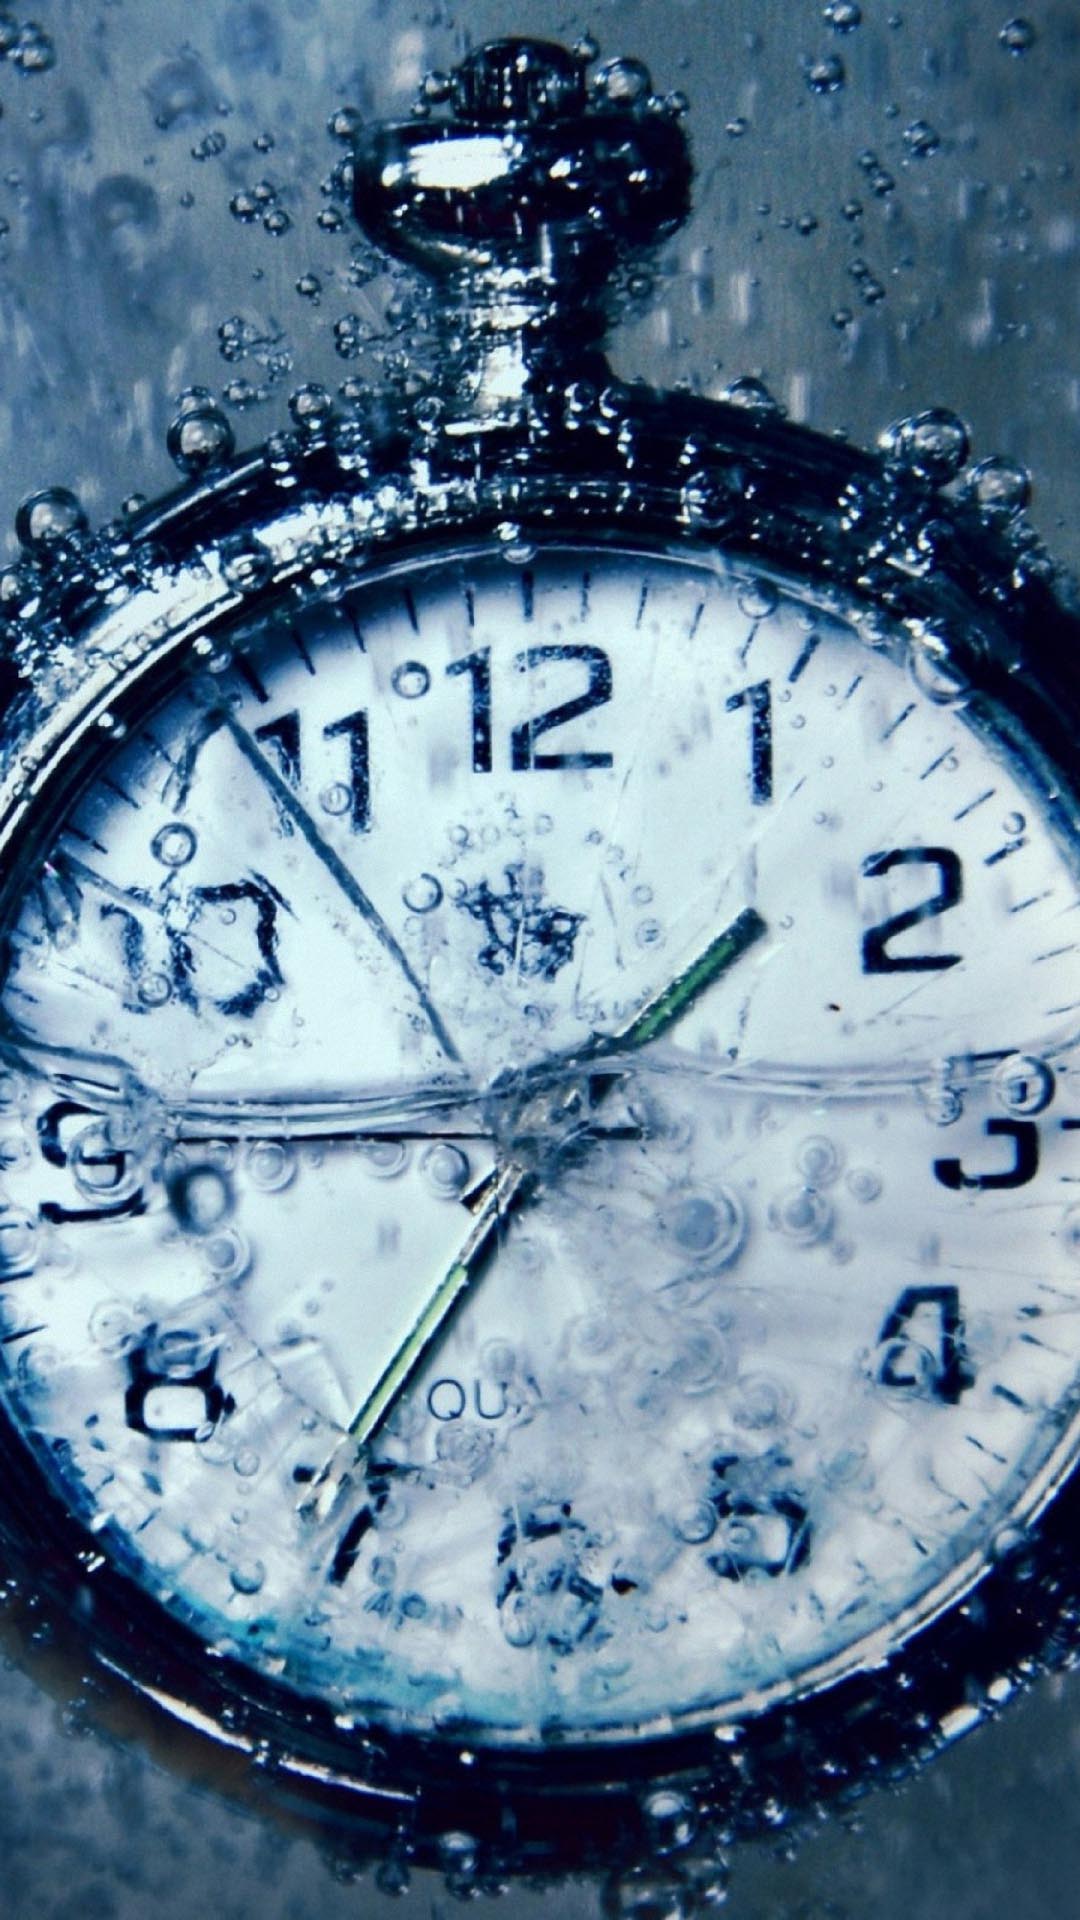 1080 x 1920 픽셀의 hd 월페이퍼,손목 시계,아날로그 시계,시계,정물 사진,폰트